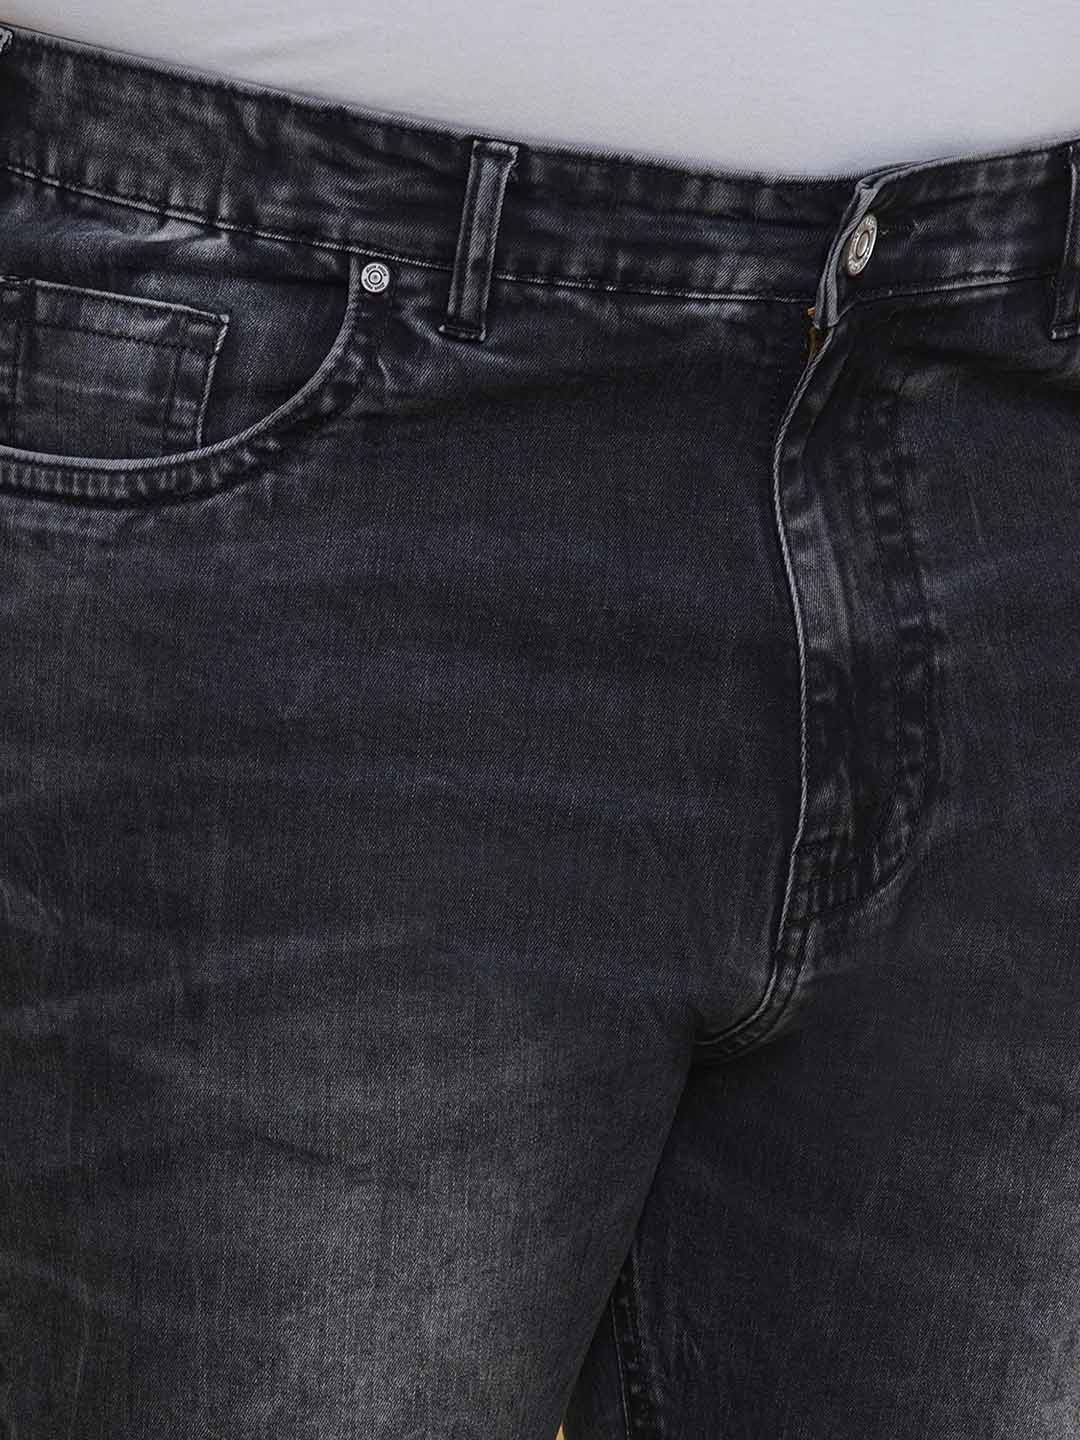 bottomwear/jeans/PJPJ6092/pjpj6092-2.jpg